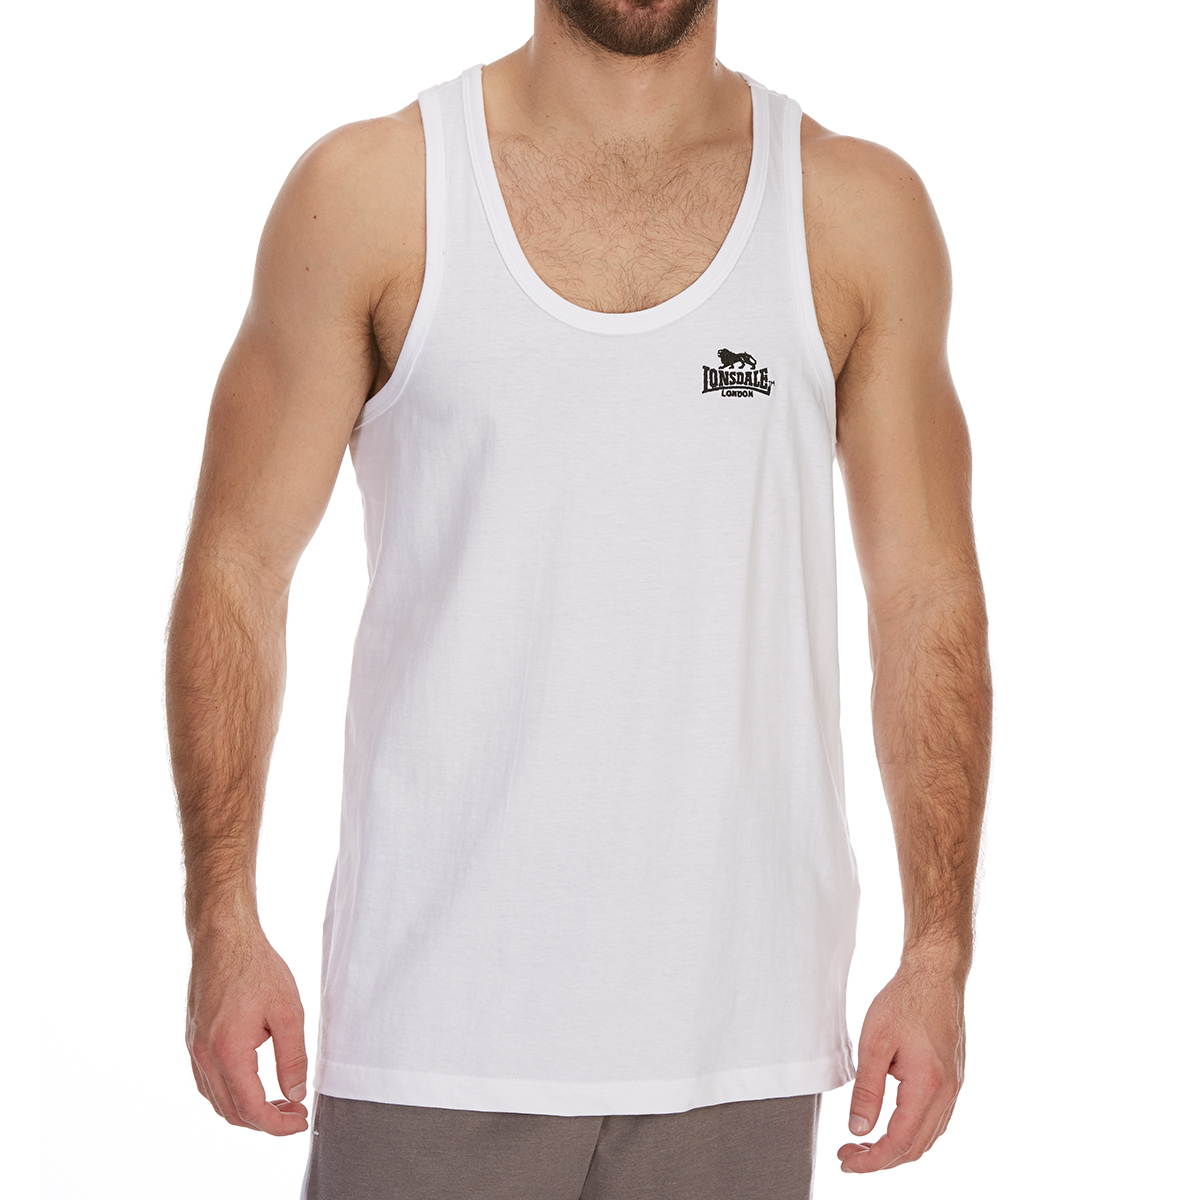 Lonsdale Men's Muscle Vest - White, XL